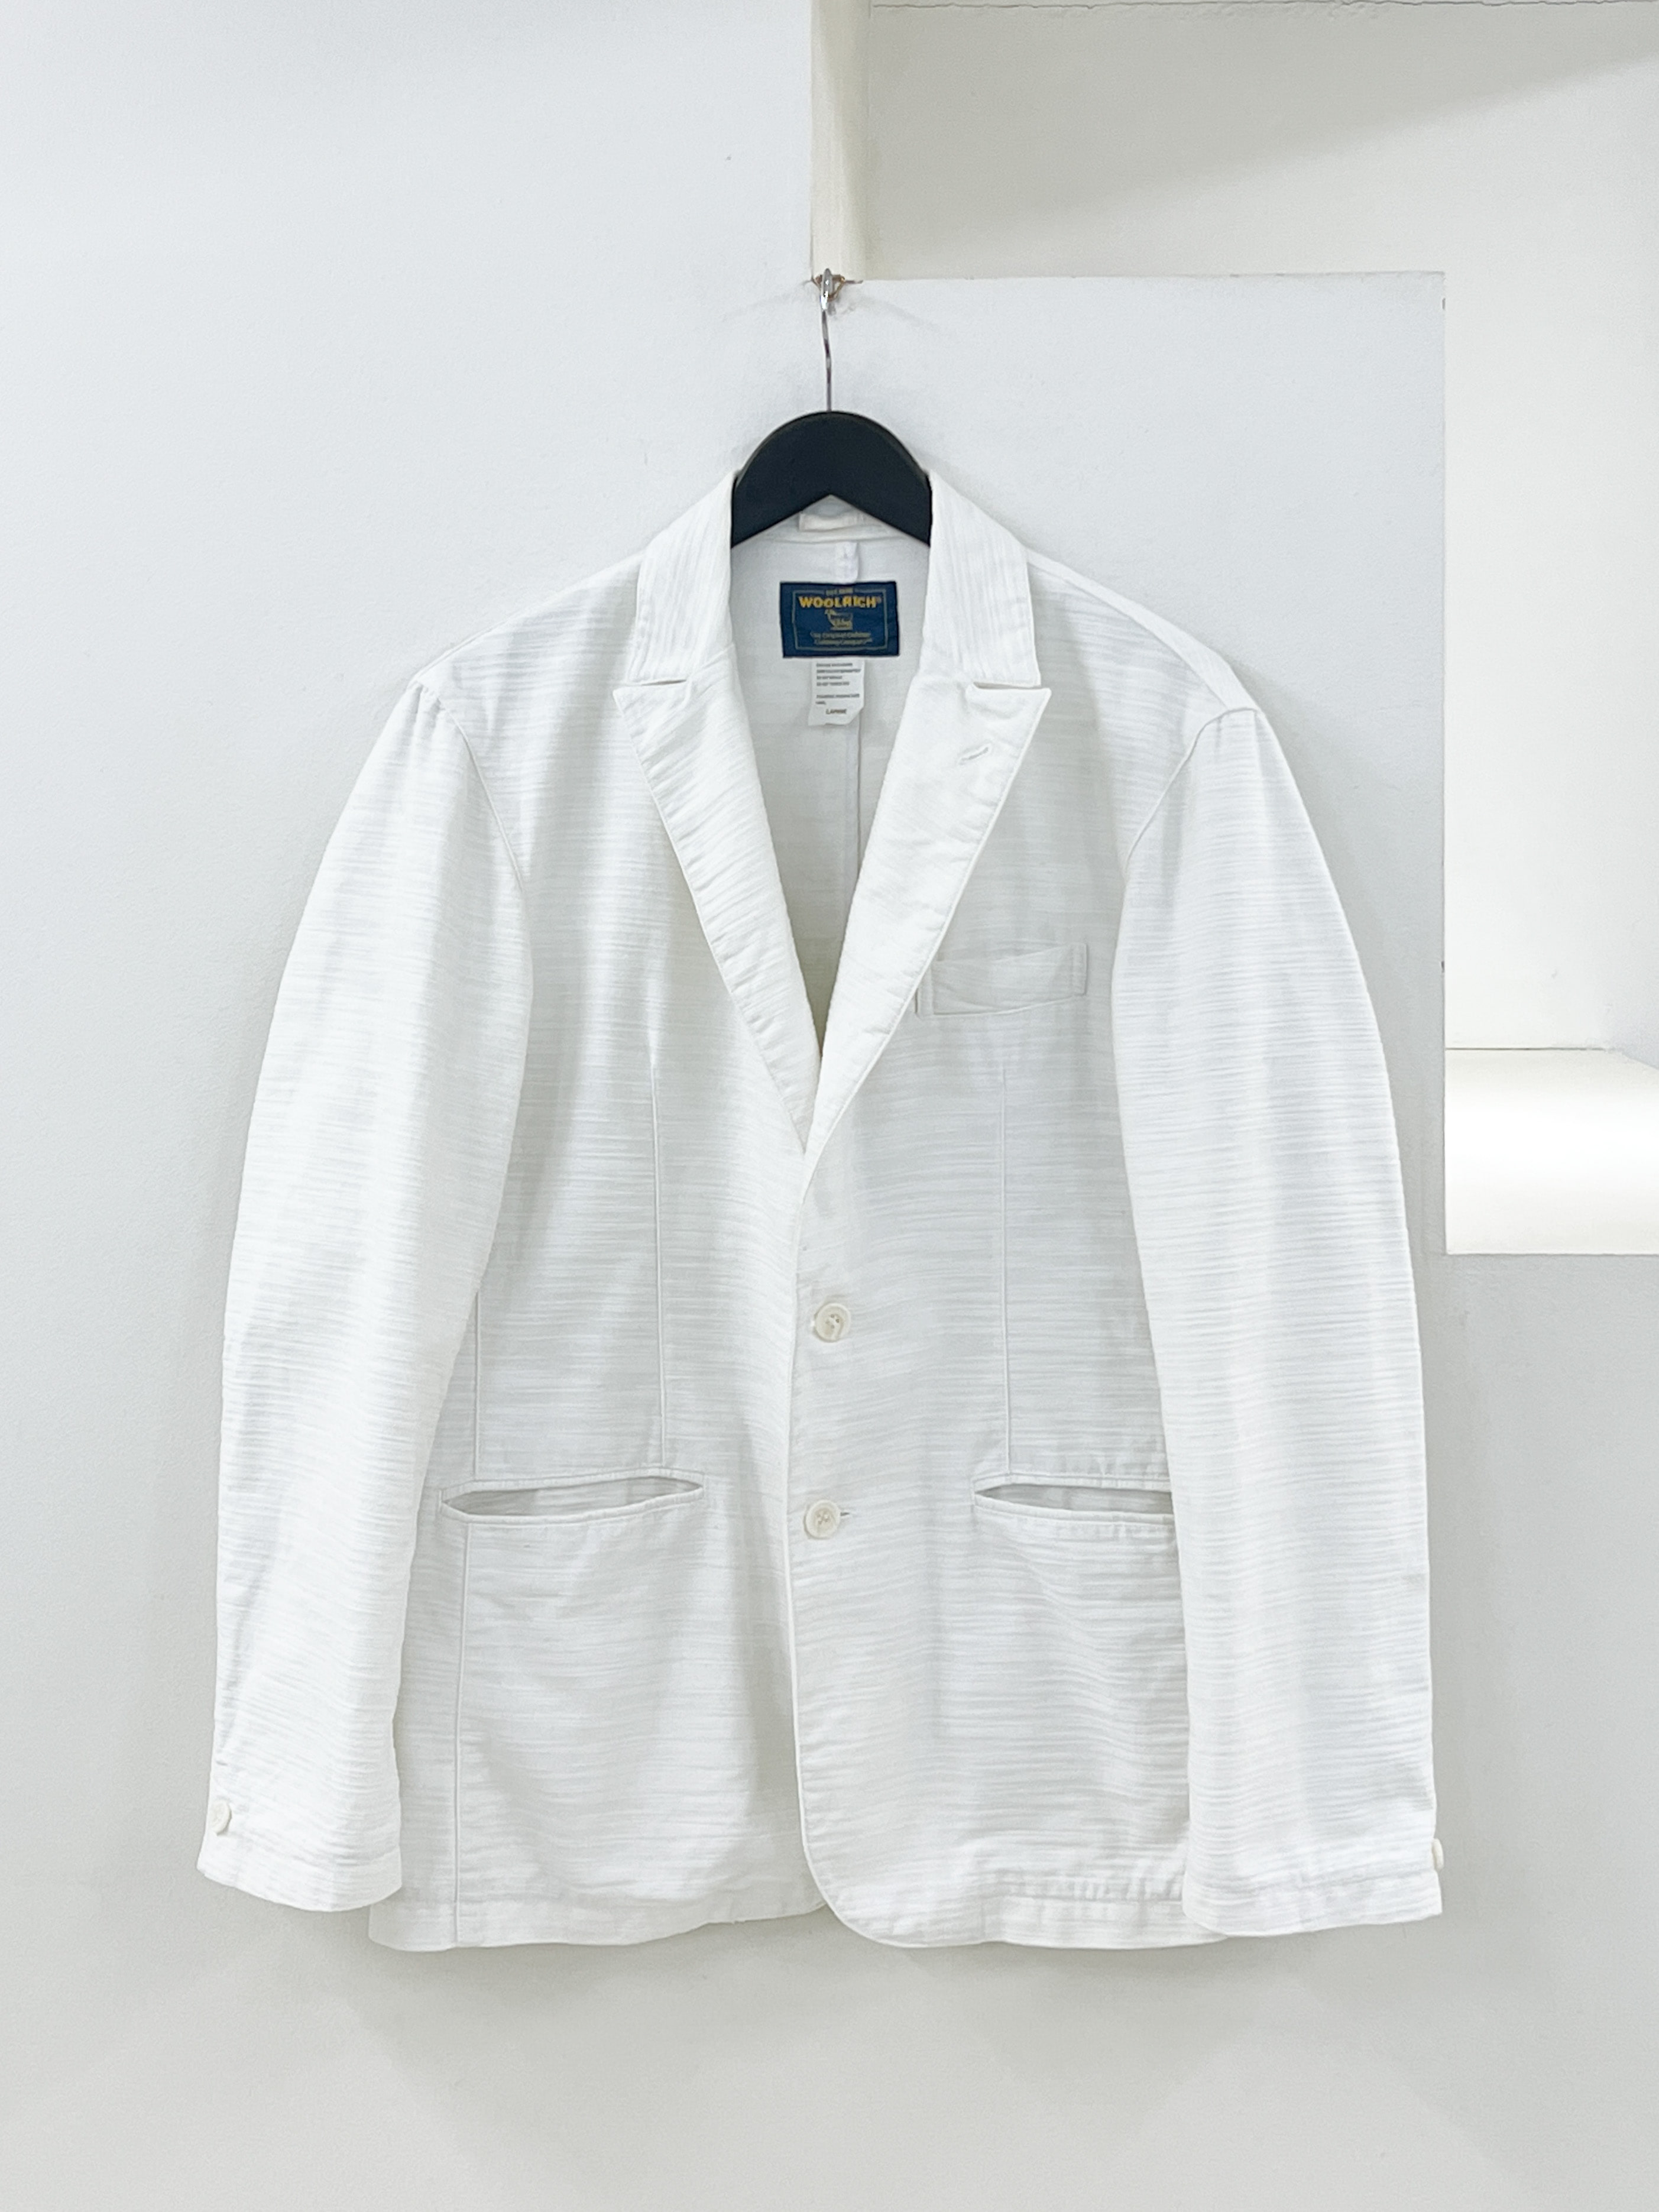 Woolrich white cotton jacket